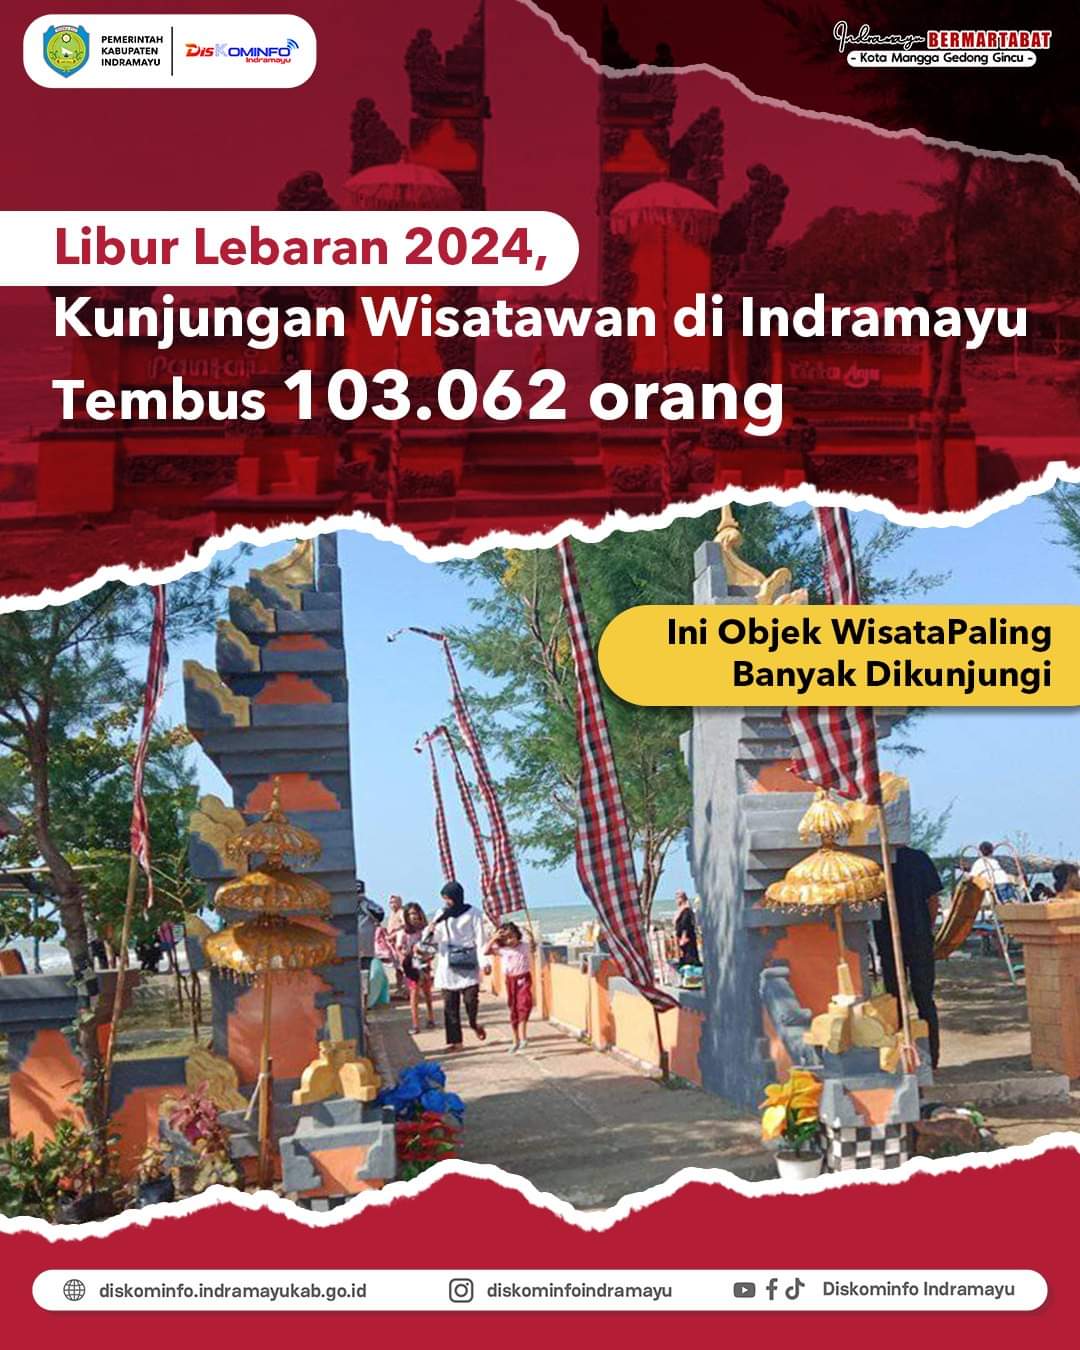 Ini Objek Wisata Paling Banyak Dikunjungi Saat Libur Lebaran 2024, Kunjungan Wisatawan di Indramayu Tembus 103.062 orang